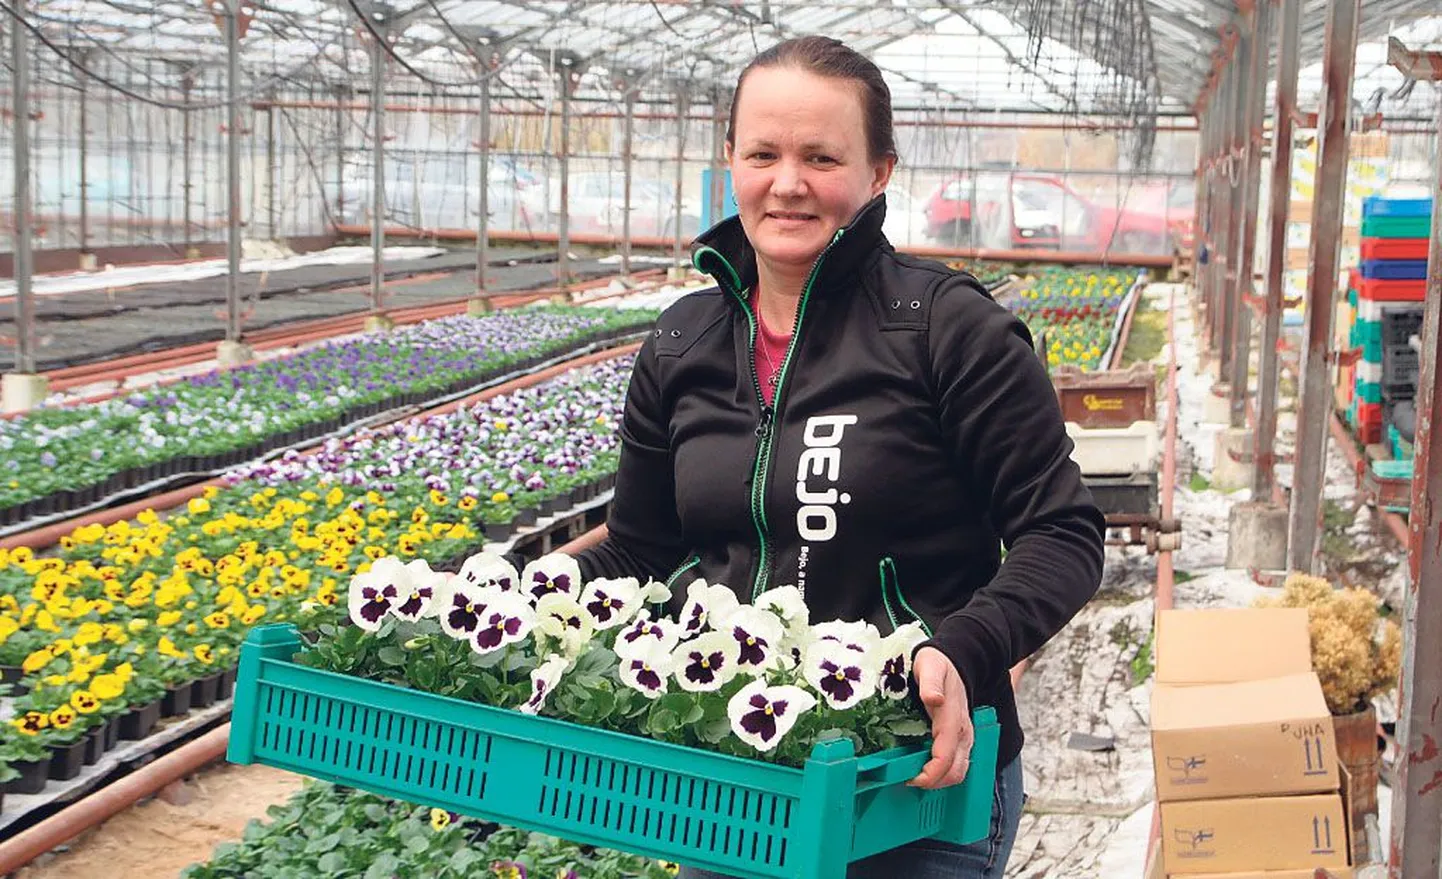 Angela Jürgenson ei pane kodus lillepeenardele eriti rõhku, sest tema tööpäevad mööduvad niigi õiteilu keskel. Aare Jürgenson kohendab kastmissüsteemi, milleta taimekasvatust tänapäeval enam ette ei kujuta.